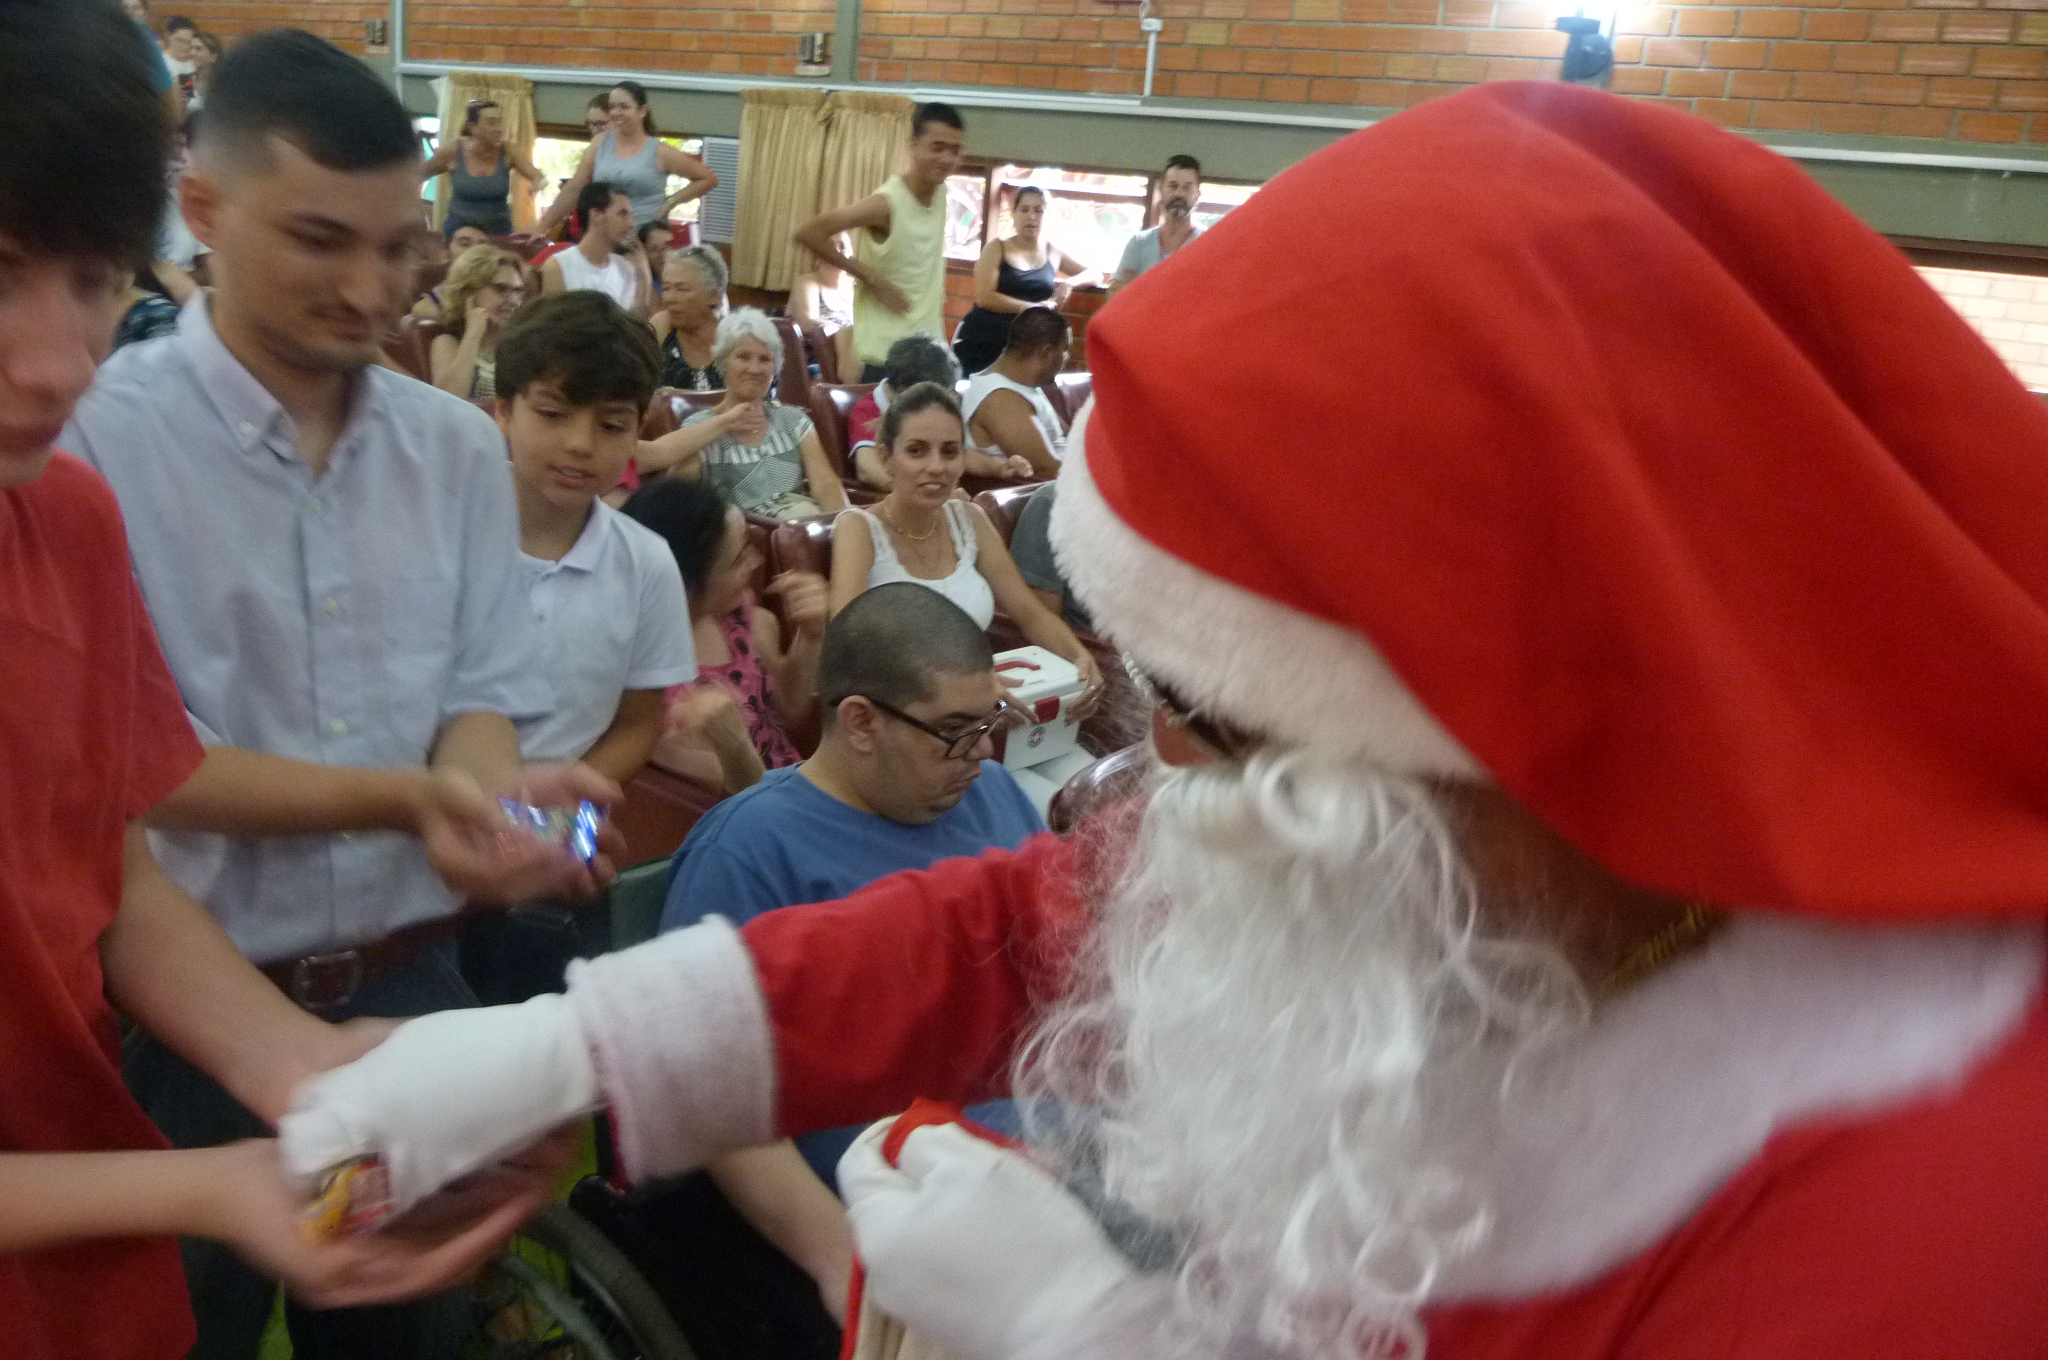 Papai Noel distribui balas em meio aos educandos no auditório